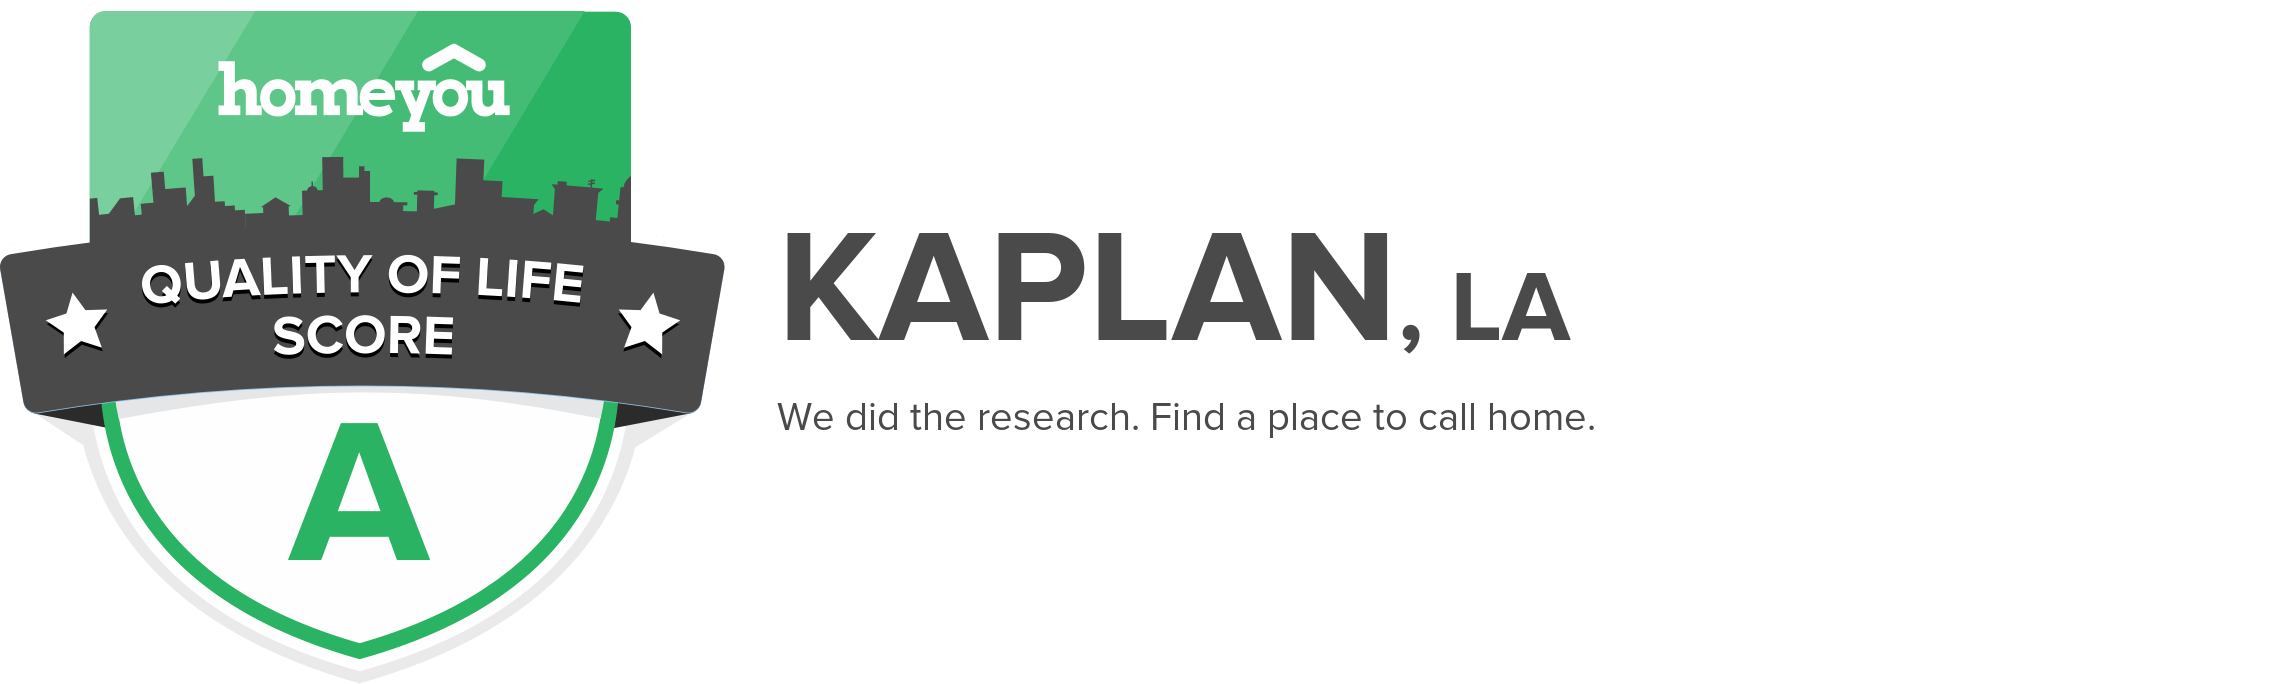 Kaplan, LA